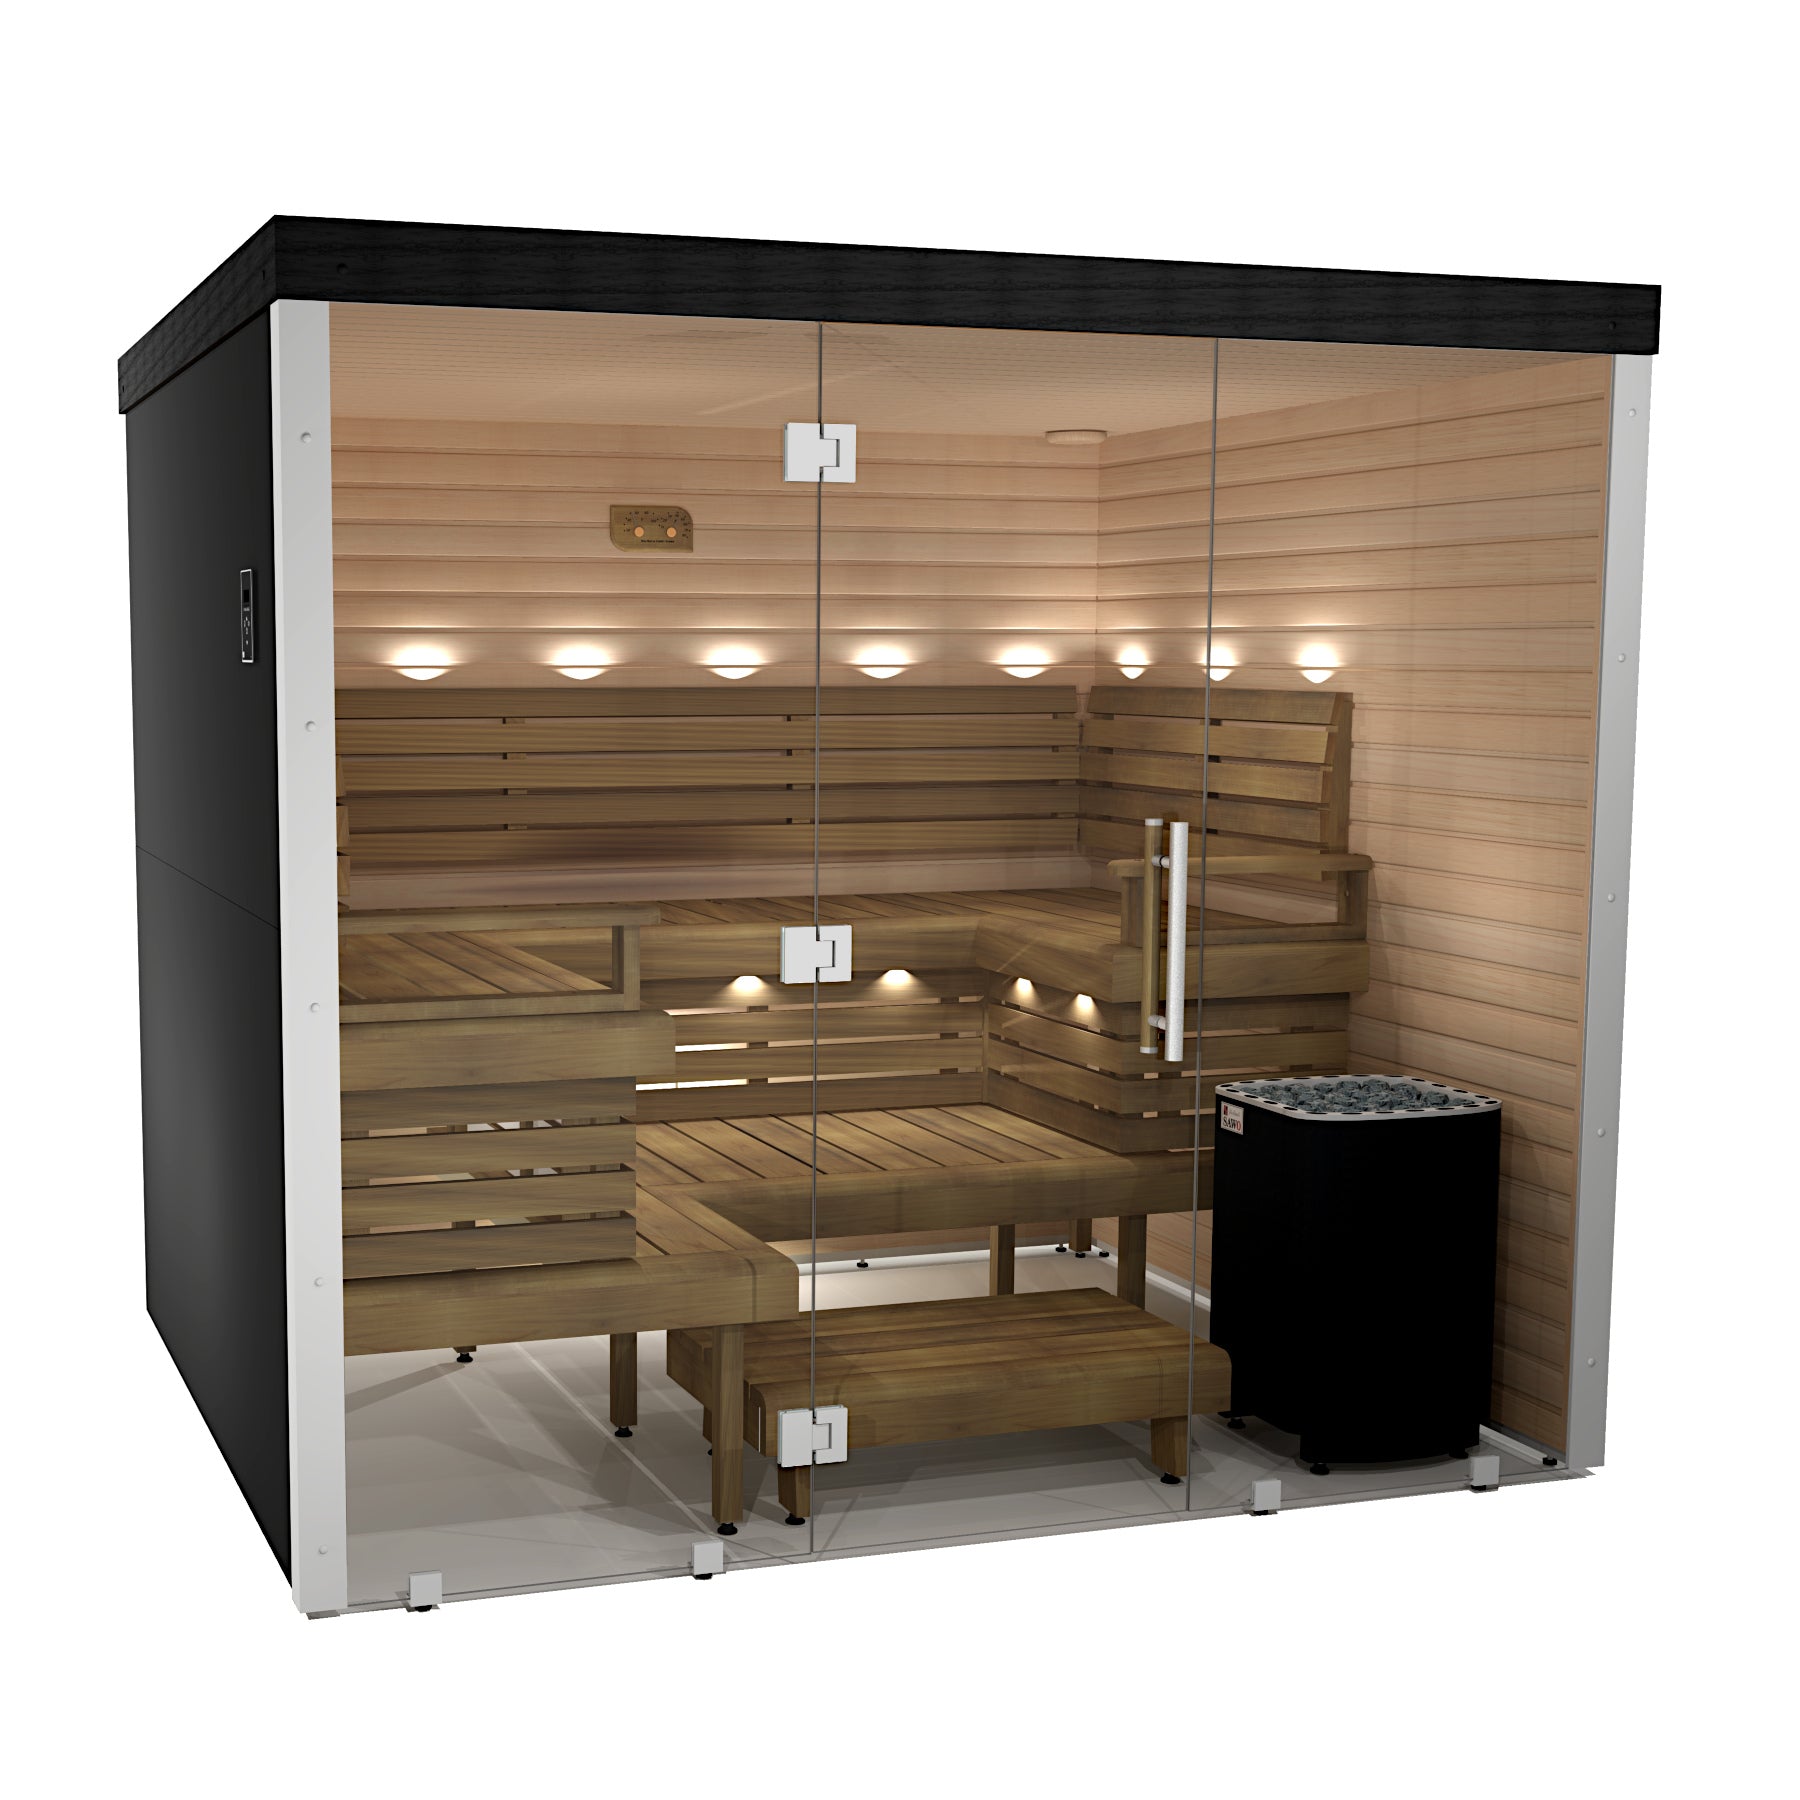 Indoor saunas - Northern Luxury